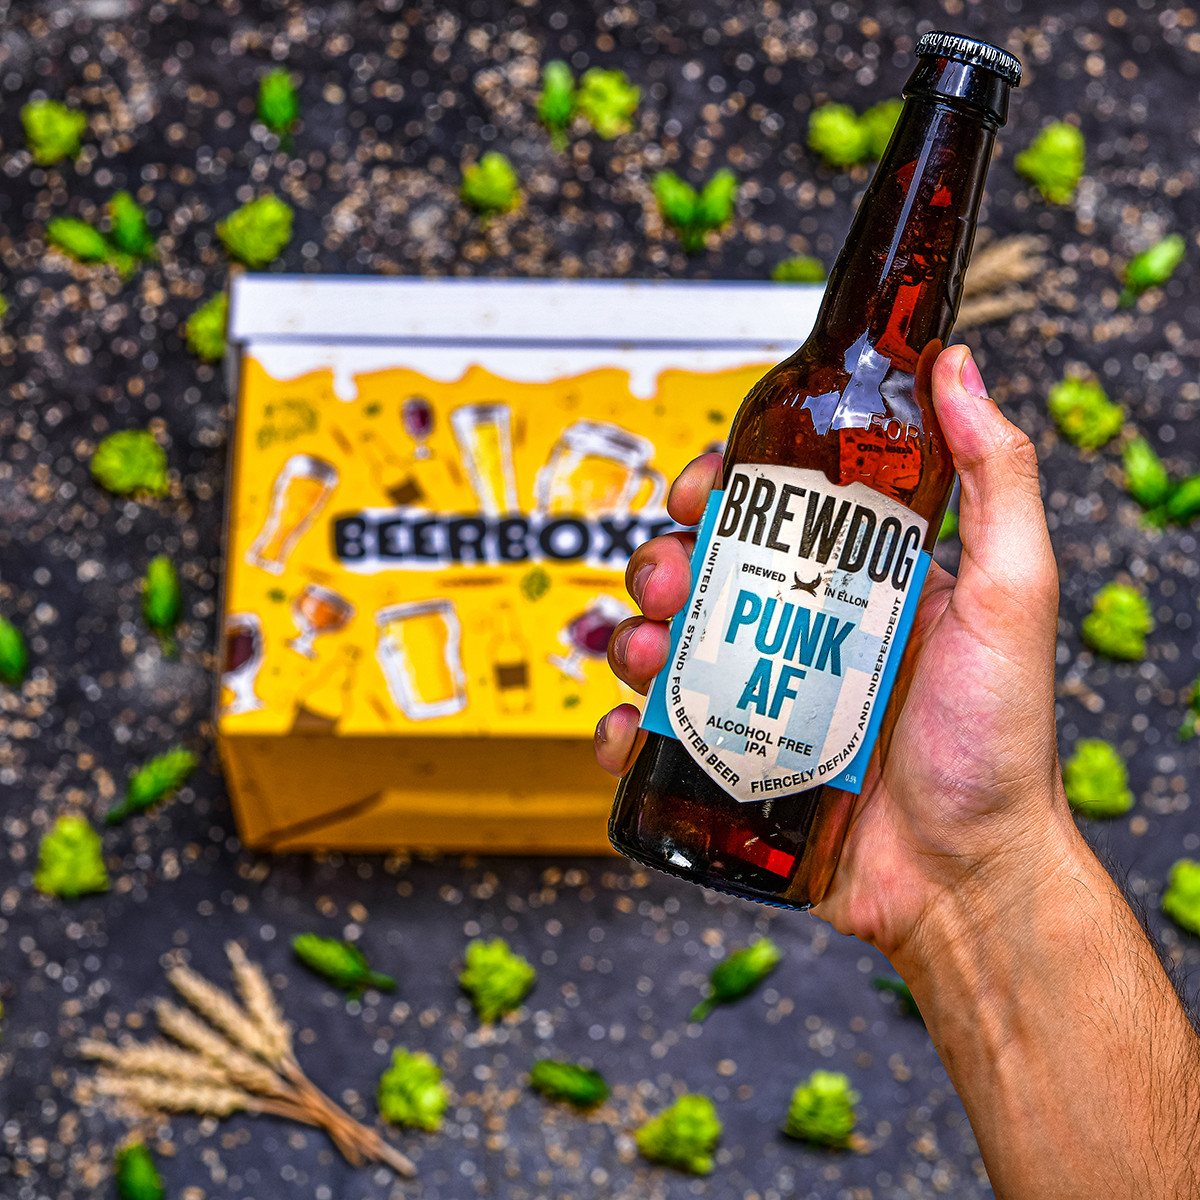 BeerBOXEO plné NEALKO pivních speciálů s pivním Tričkem vol. 2